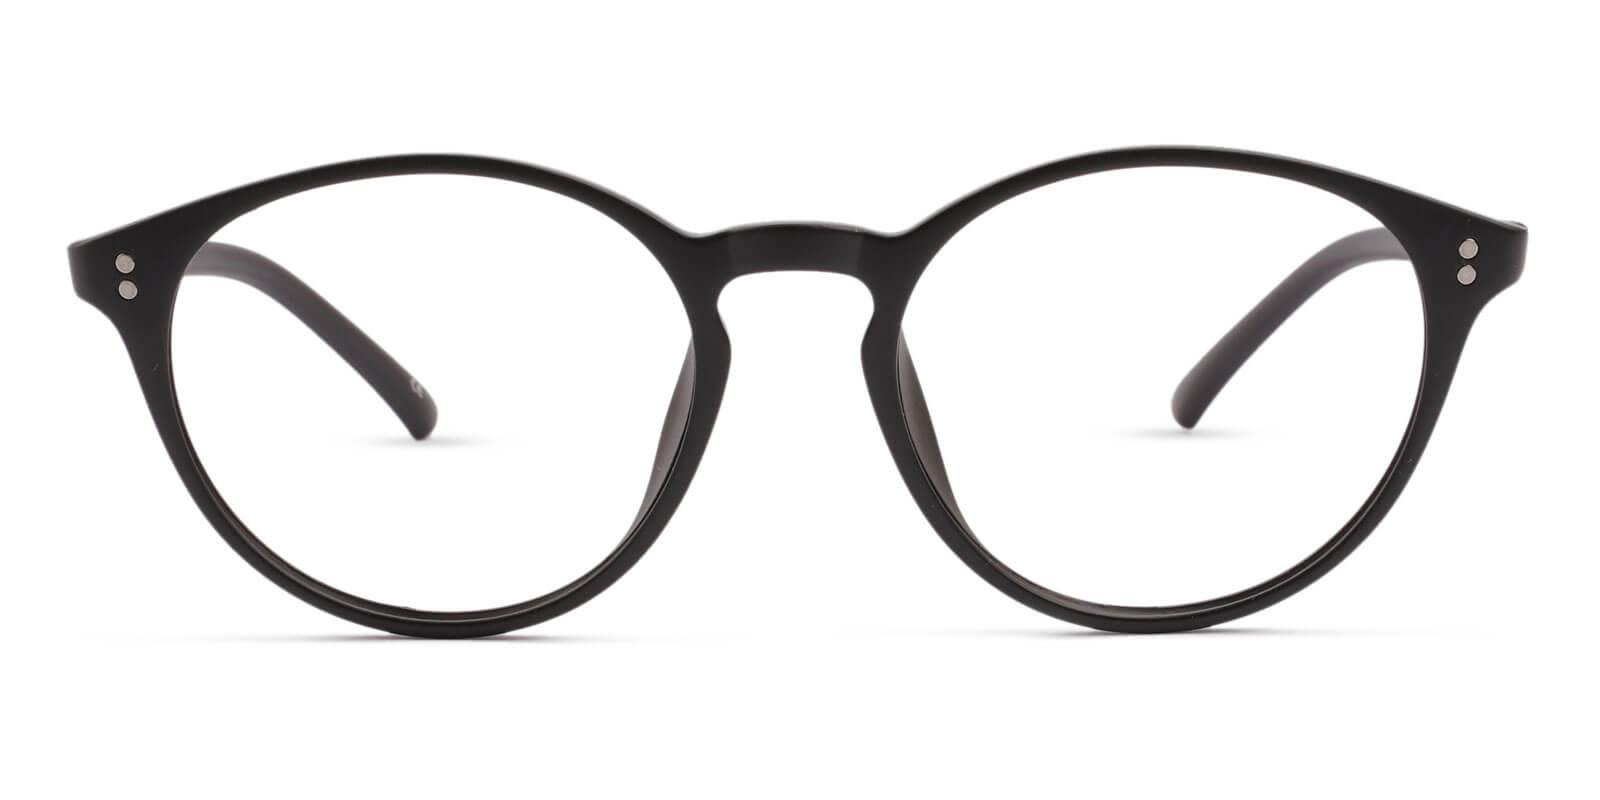 Kids-Deimos Black TR Eyeglasses , UniversalBridgeFit , Lightweight Frames from ABBE Glasses